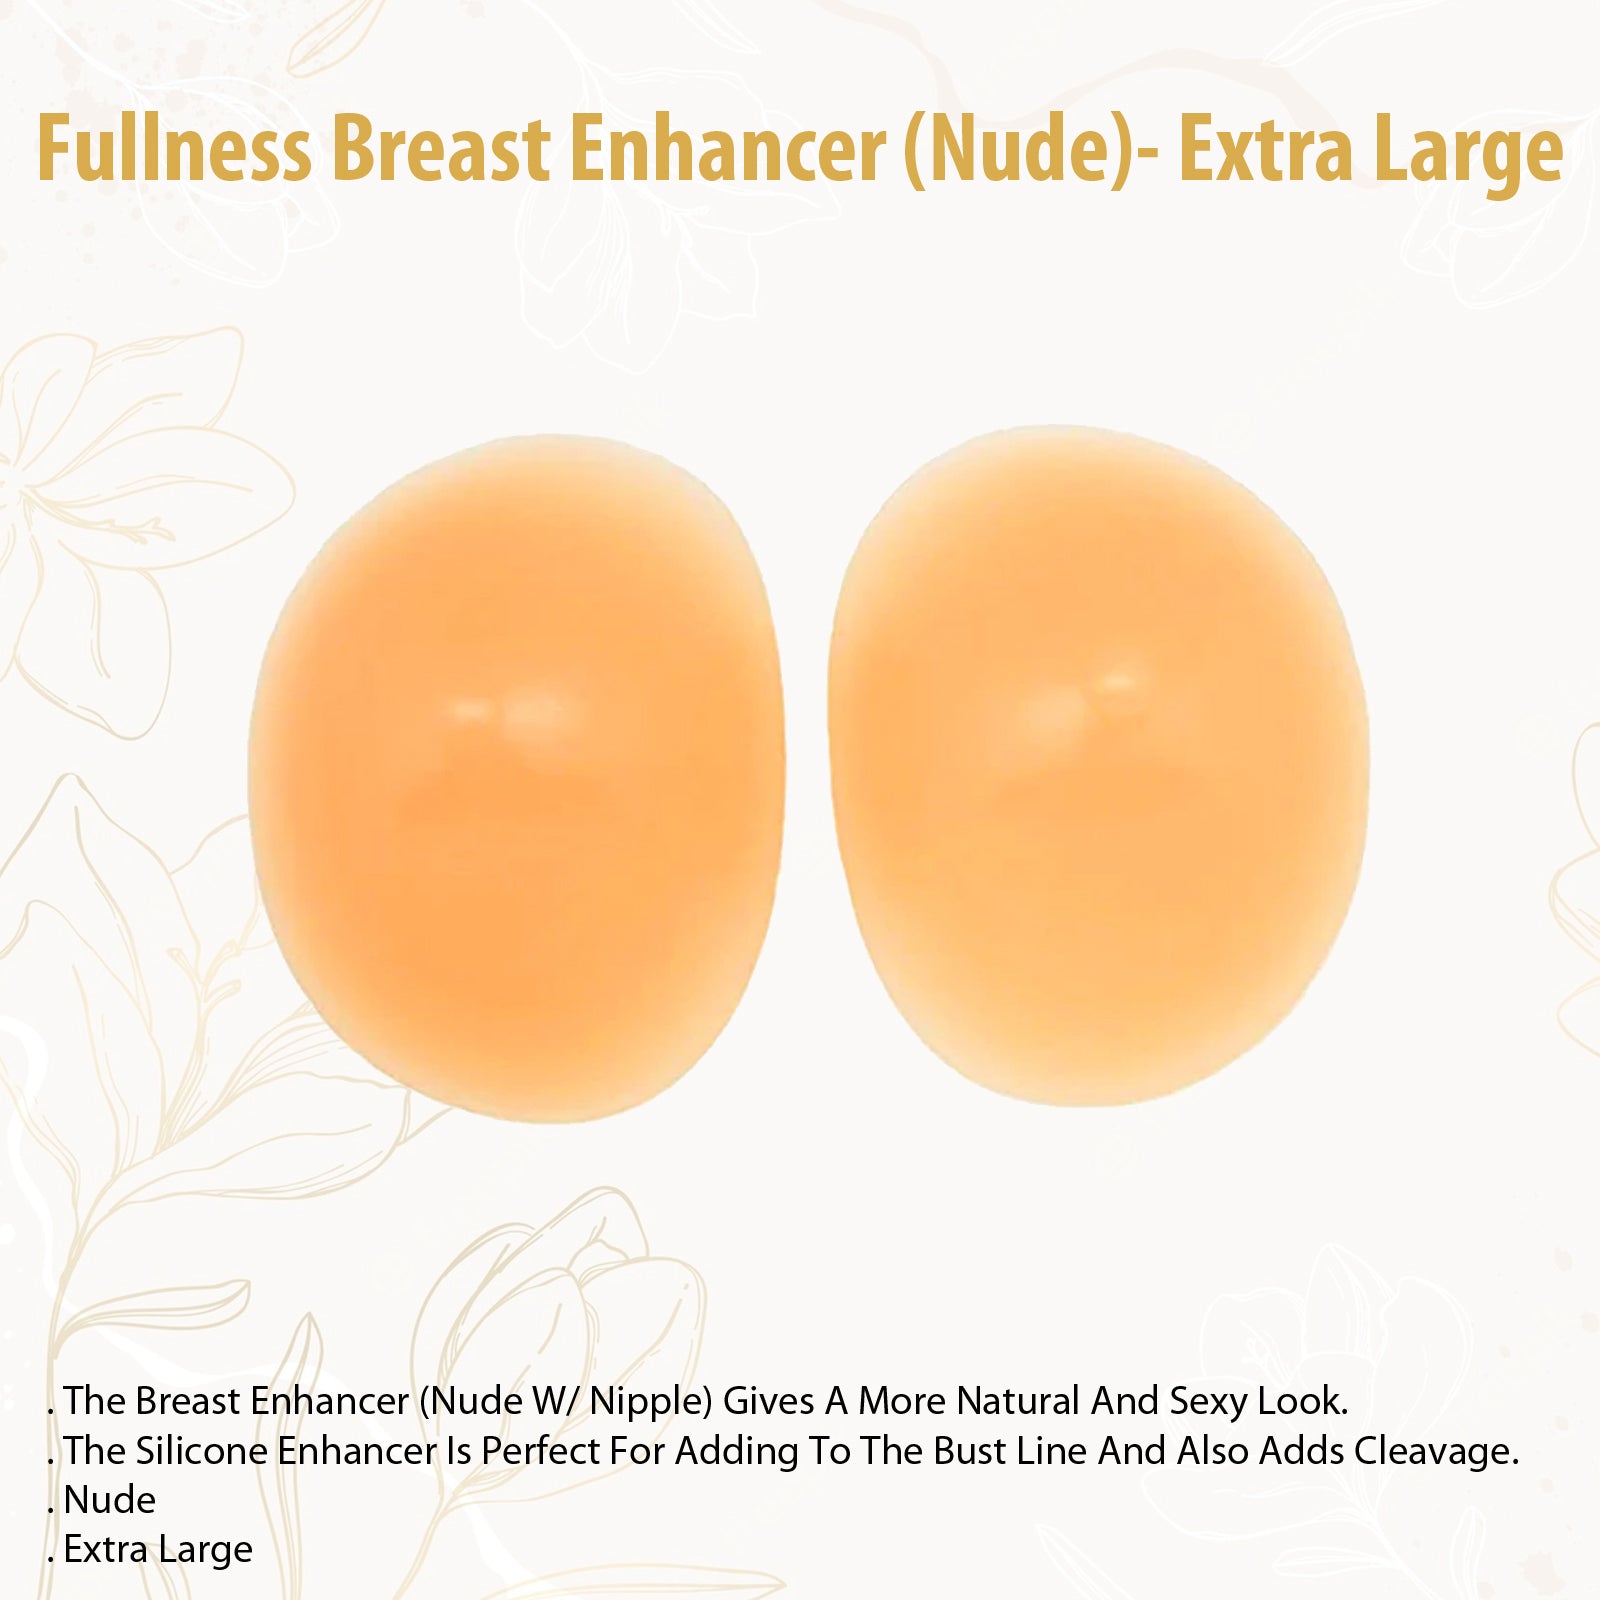 Fullness Breast Enhancer (Nude W/ Nipple)- Extra/L Fit All Bra